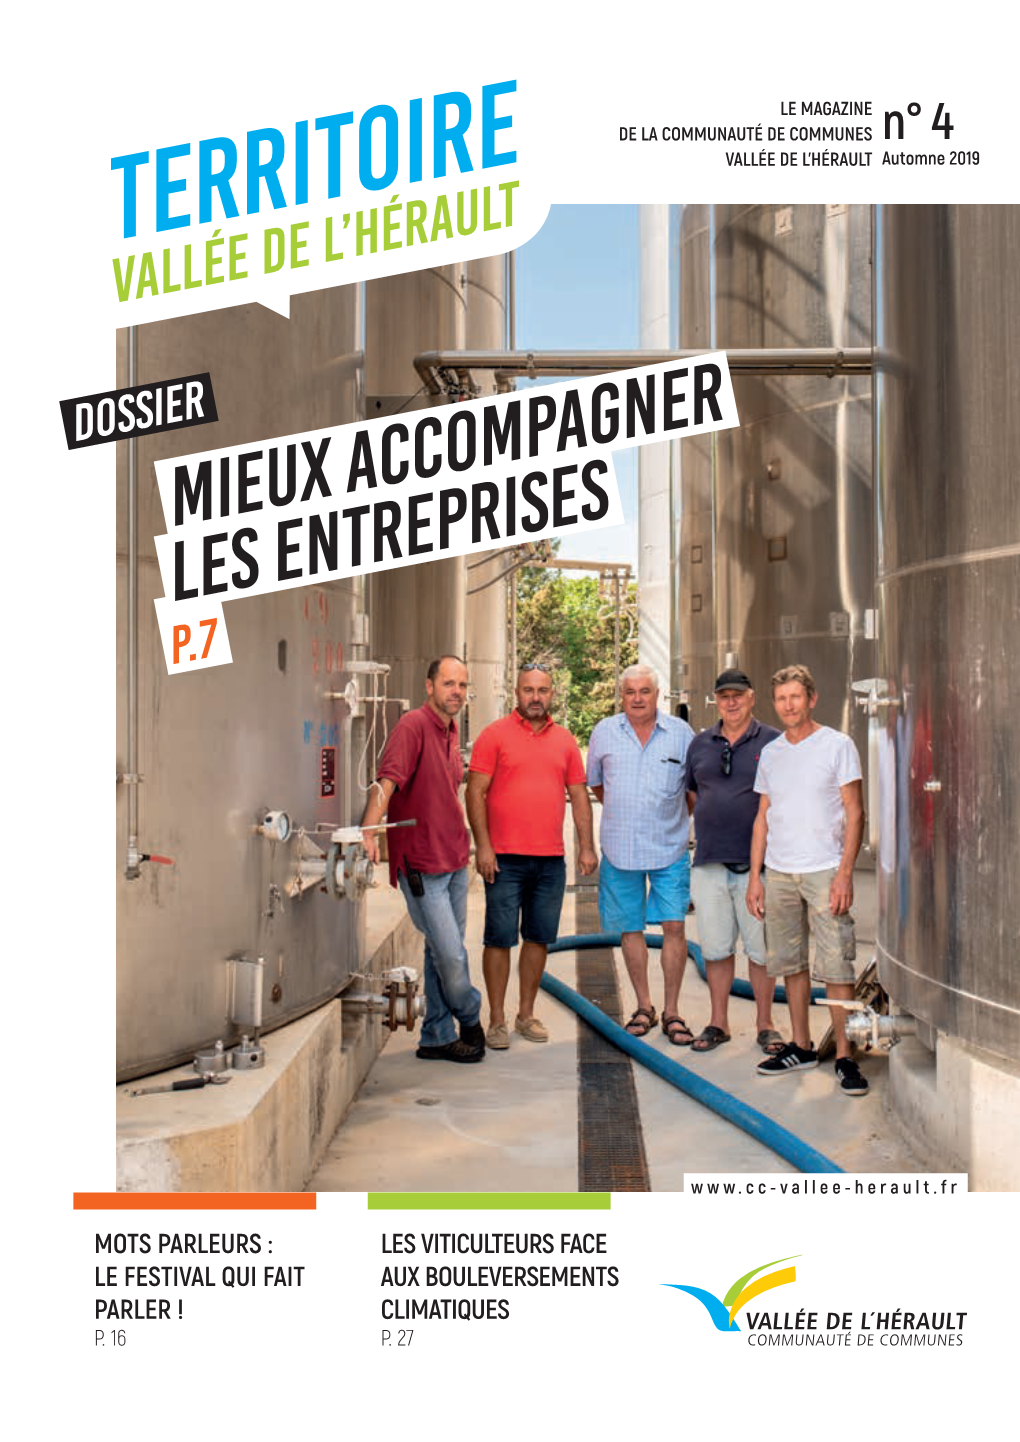 TERRITOIRE VALLÉE DE L’HÉRAULT Automne 2019 Vallée De L’Hérault Dossier Mieux Accompagner Les Entreprises P.7